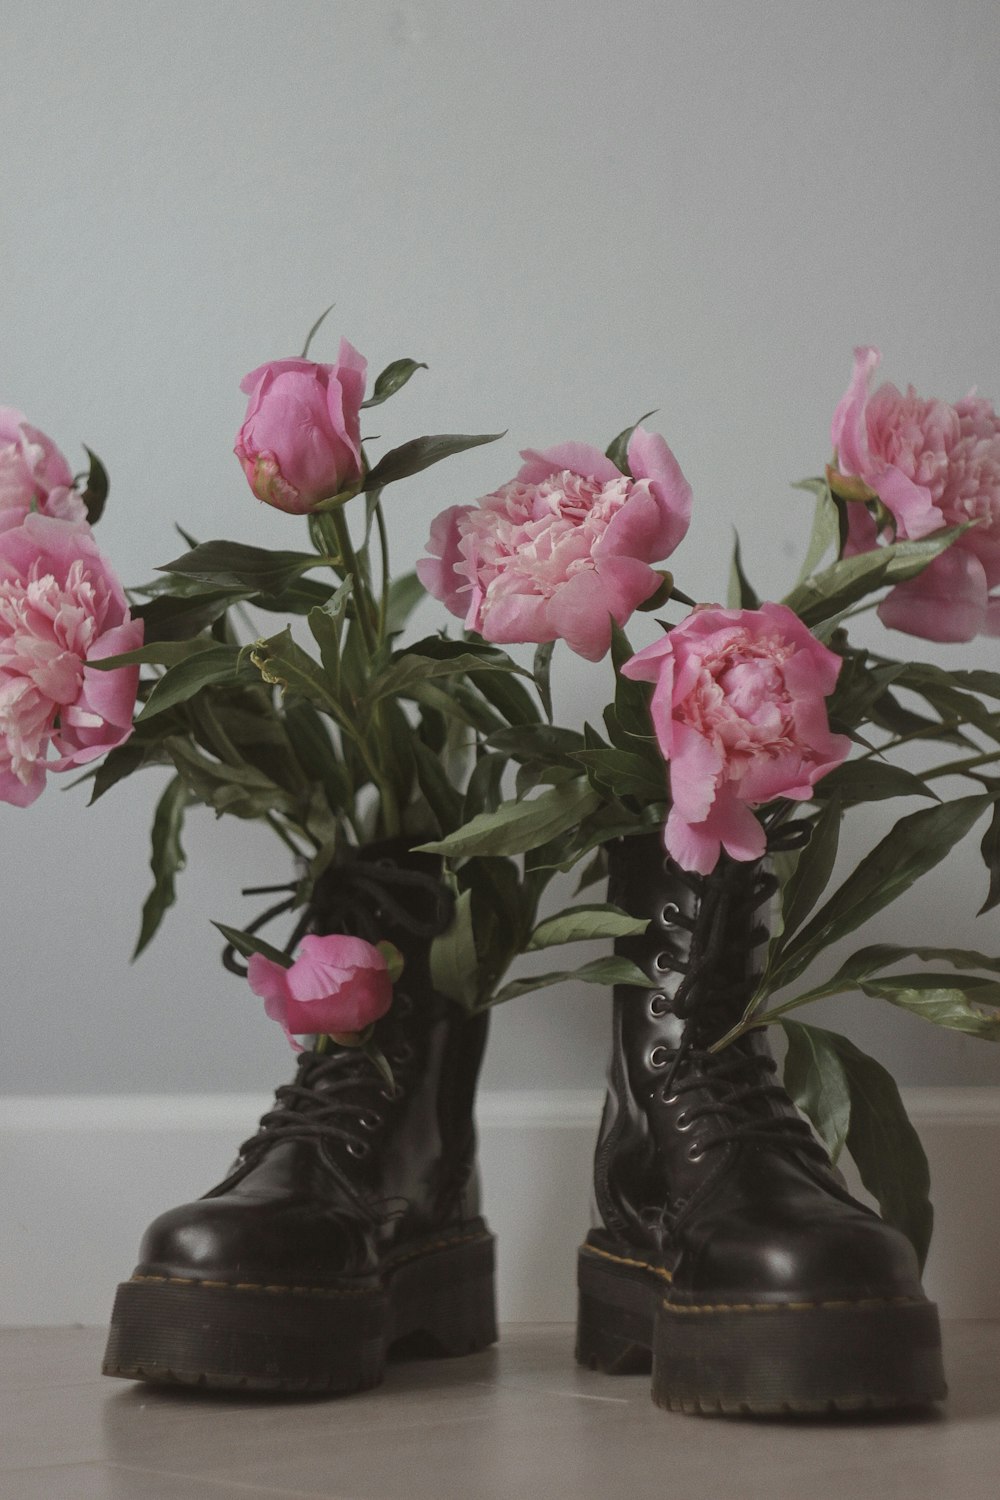 rosas cor-de-rosa em botas de chuva pretas